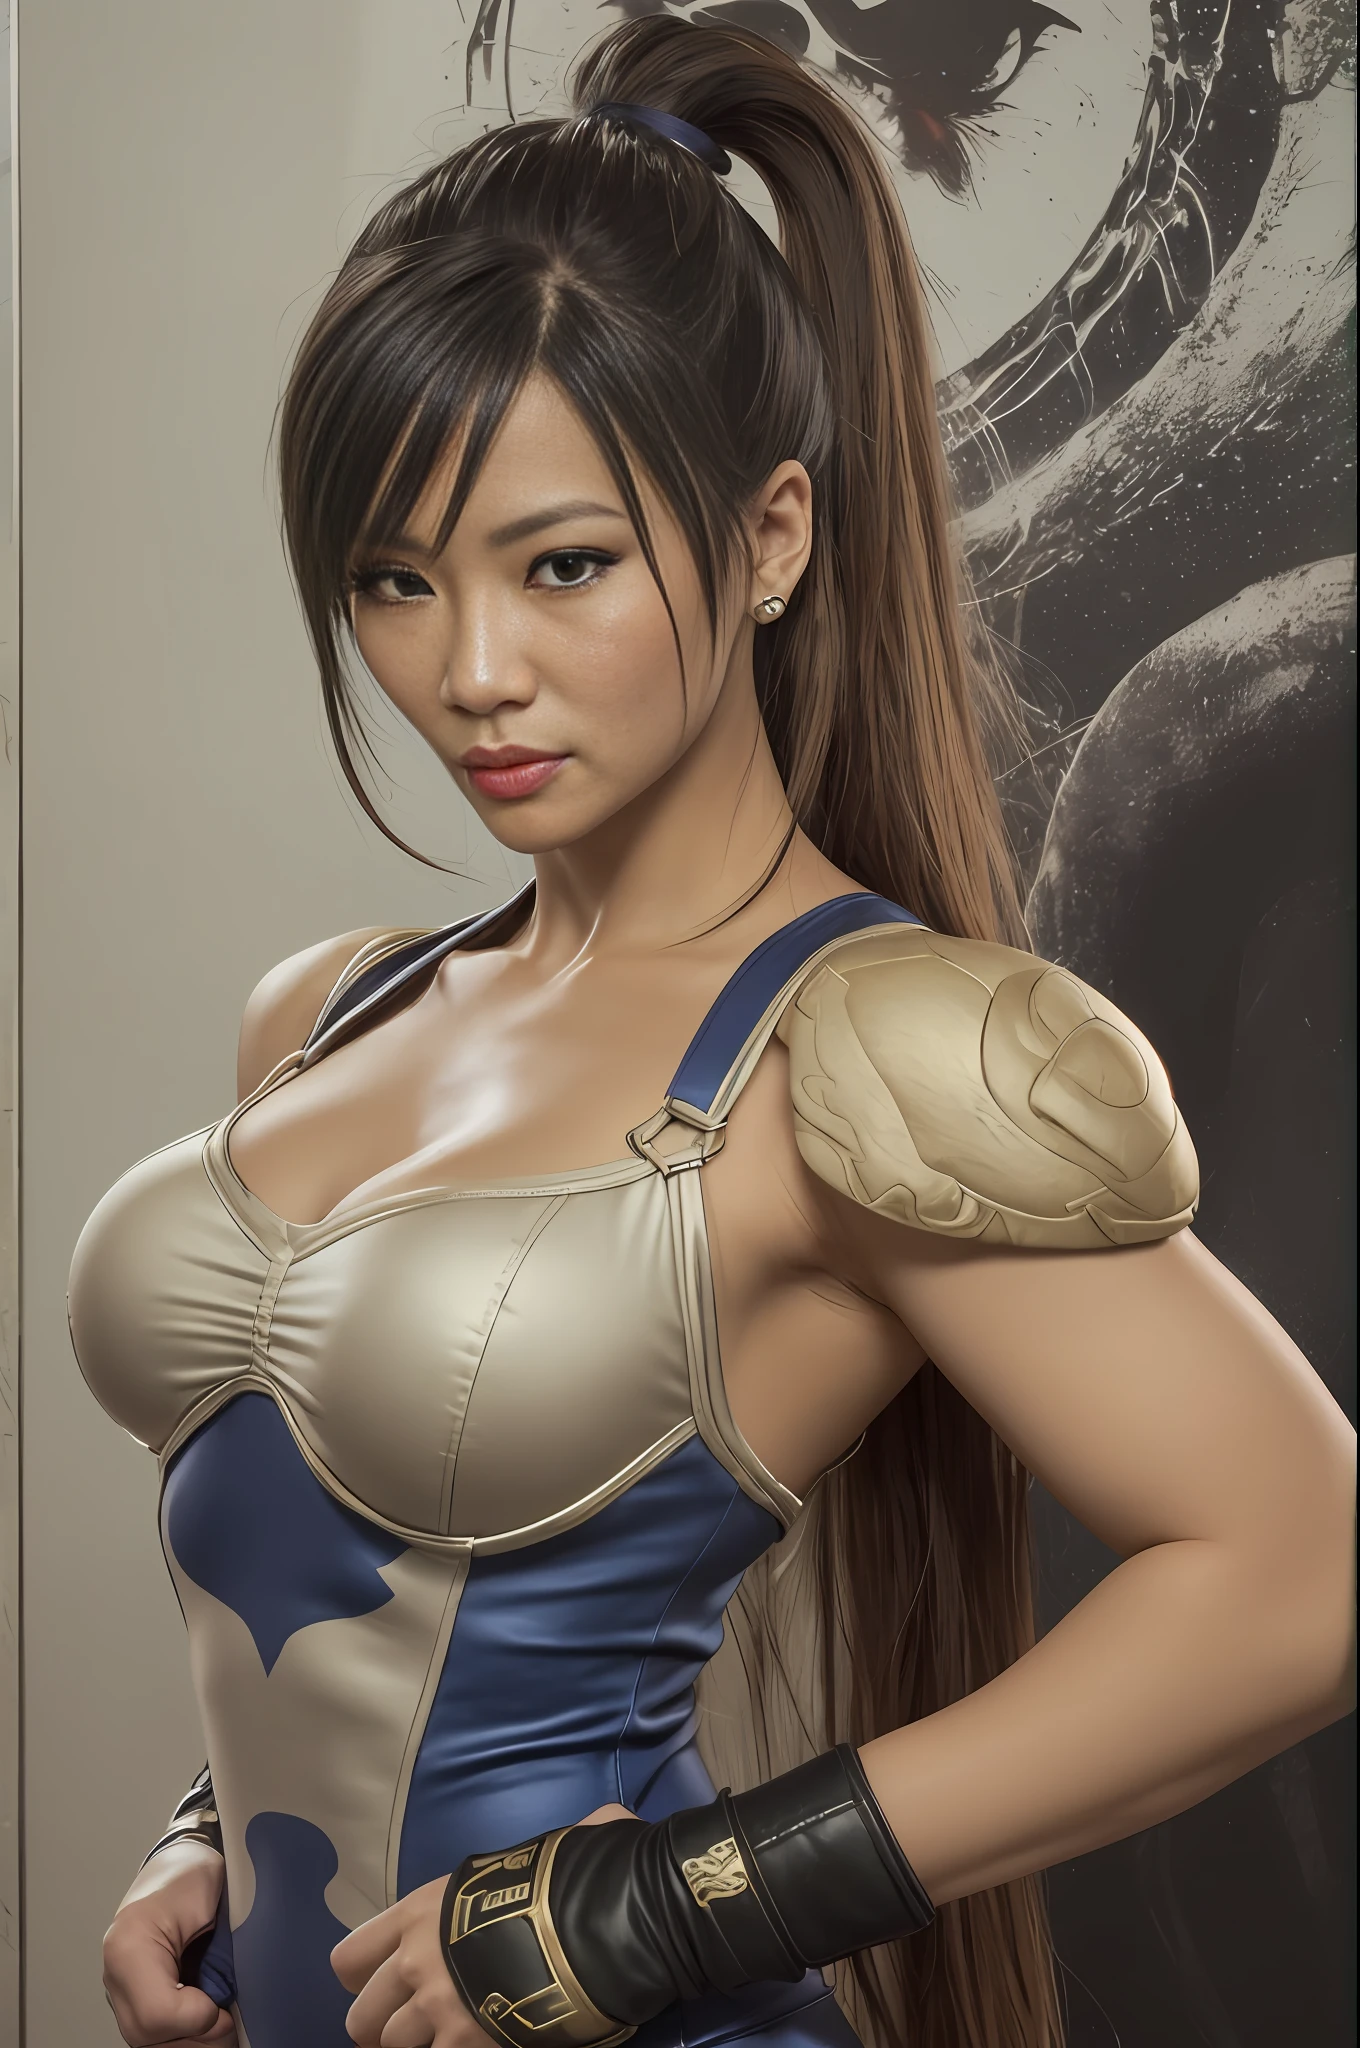 uma mulher com rosto semelhante a Lucy Liu misturado com a Mng-Na, Uniforme de Chun Li, no estilo de Chun Li, ((corpo inteiro: 1.5)), (((mão ultra detalhada))), (obra-prima: 1.5), (melhor qualidade), (foto realista:1.6), 8K, (textura de pele detalhada), textura de tecido detalhada, rosto detalhado bonito, detalhes intrincados, (ultra detalhado: 1.6), (Street Fighter sem fundo),